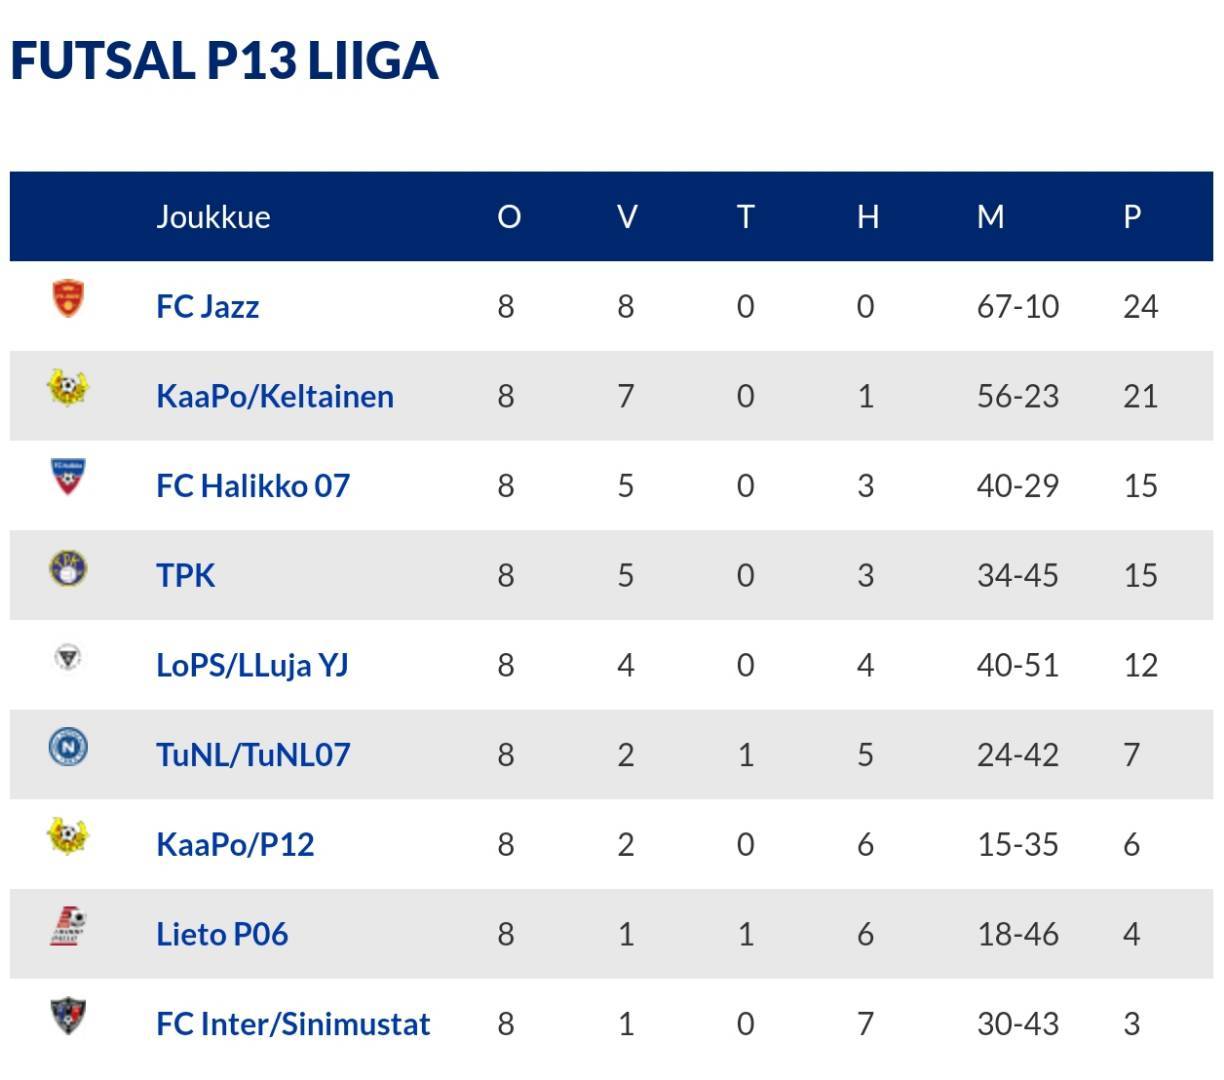 FC Jazz P06 piirin P13 Futsal mestari.